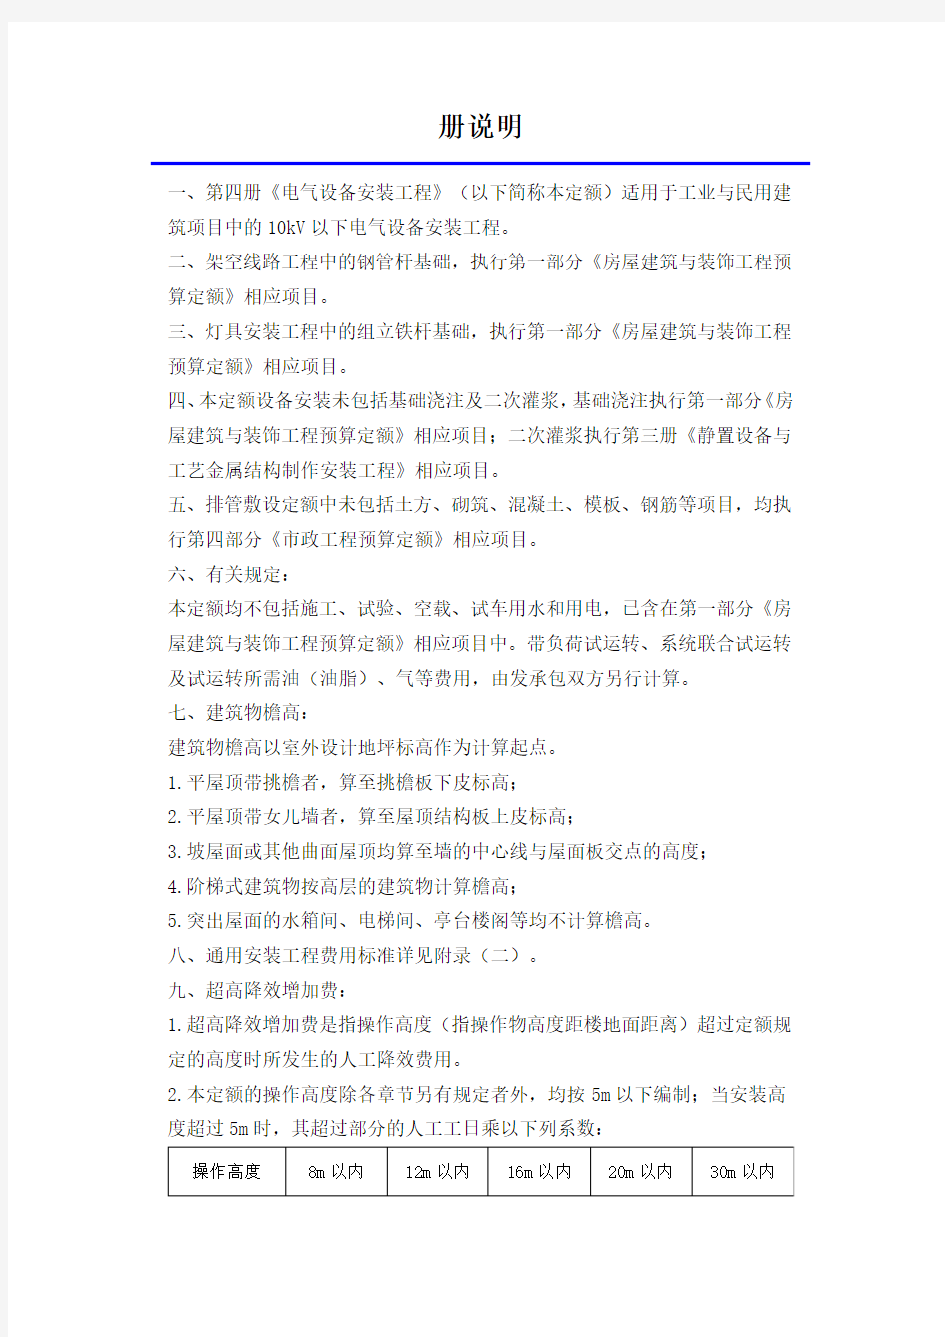 2012北京定额编制说明(总说明、册说明、章节说明)电气设备安装工程